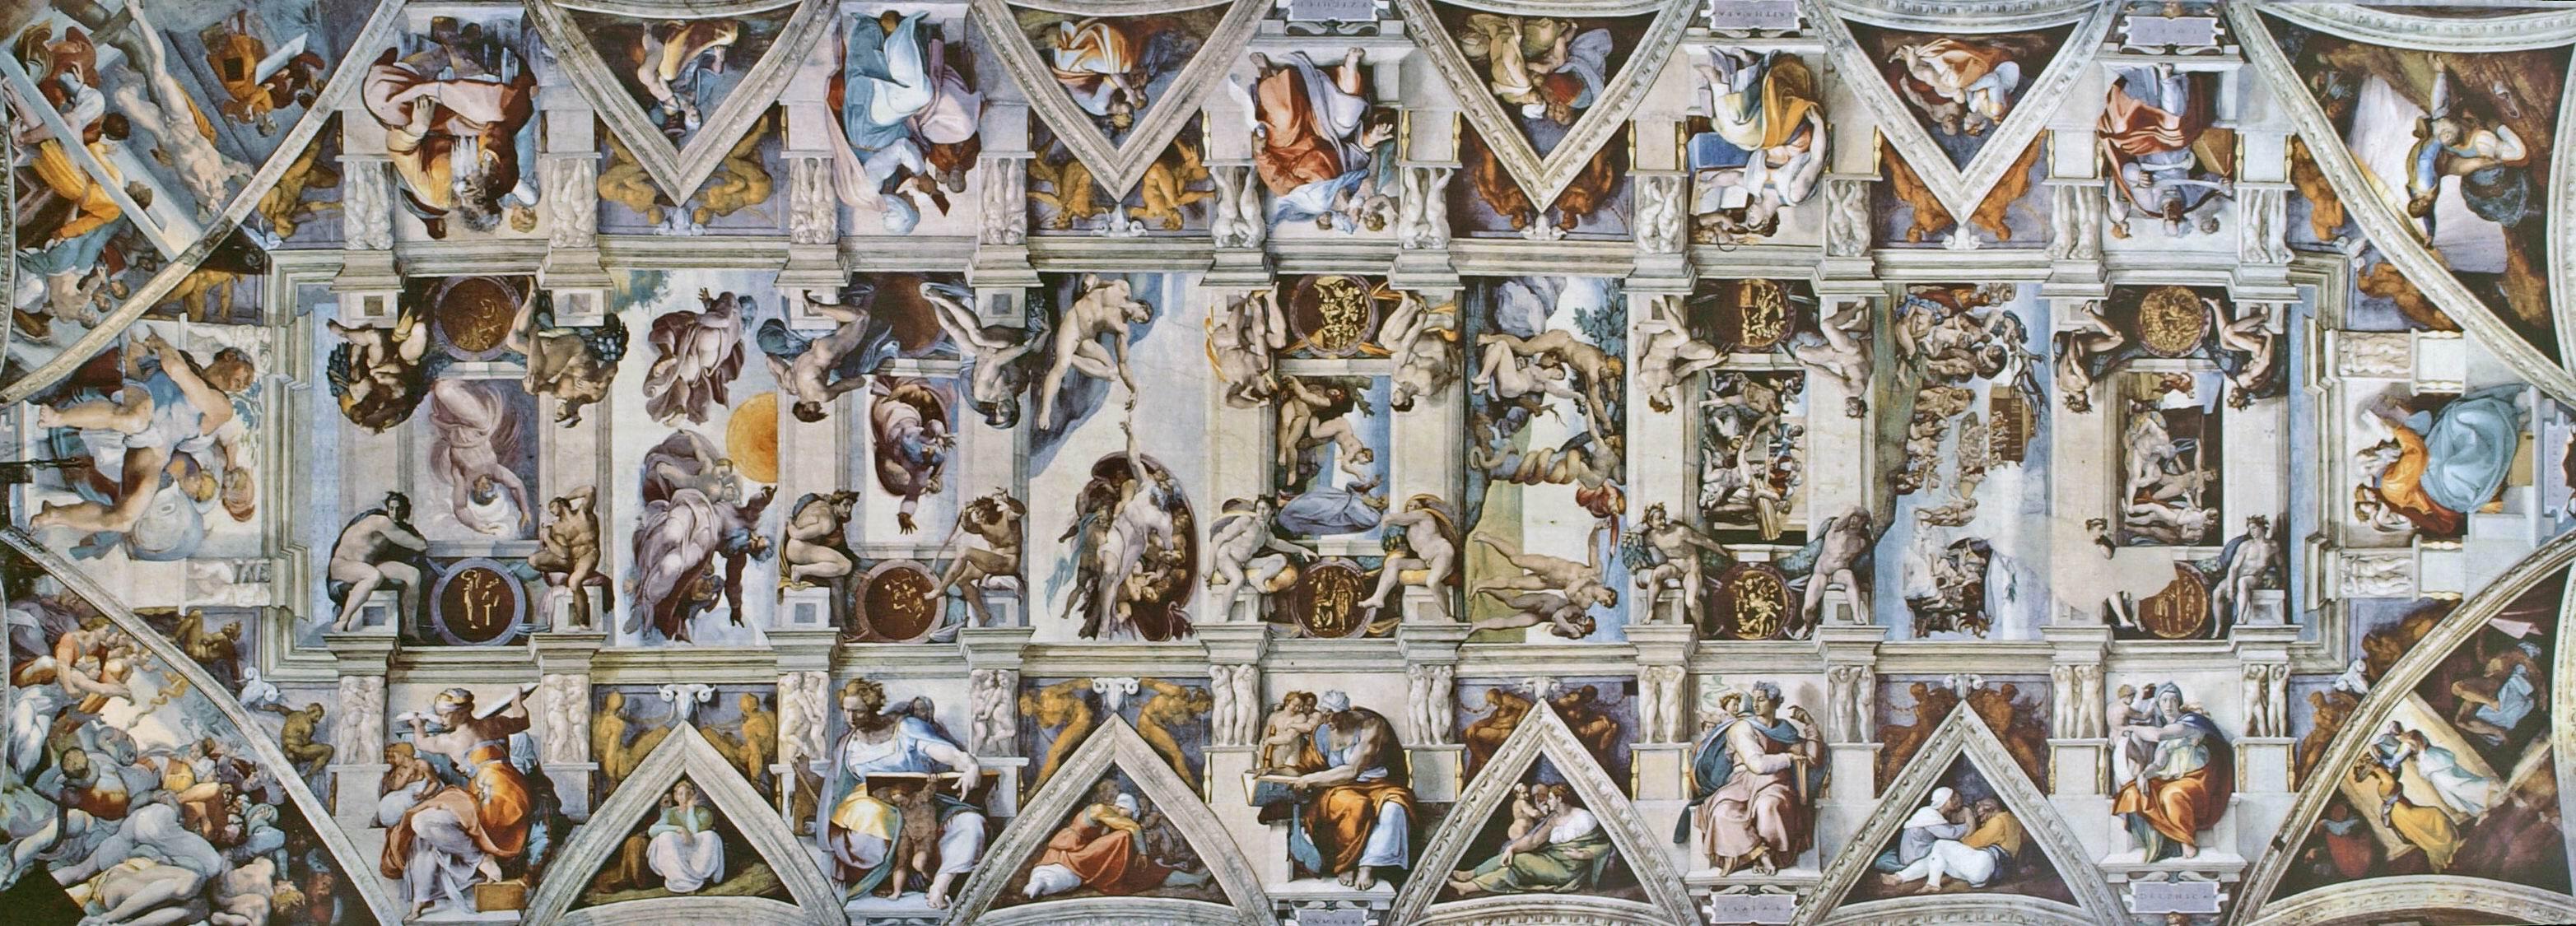 梵蒂冈博物馆10西斯廷礼拜堂天顶壁画创世纪九幅主画米开朗琪罗巨作